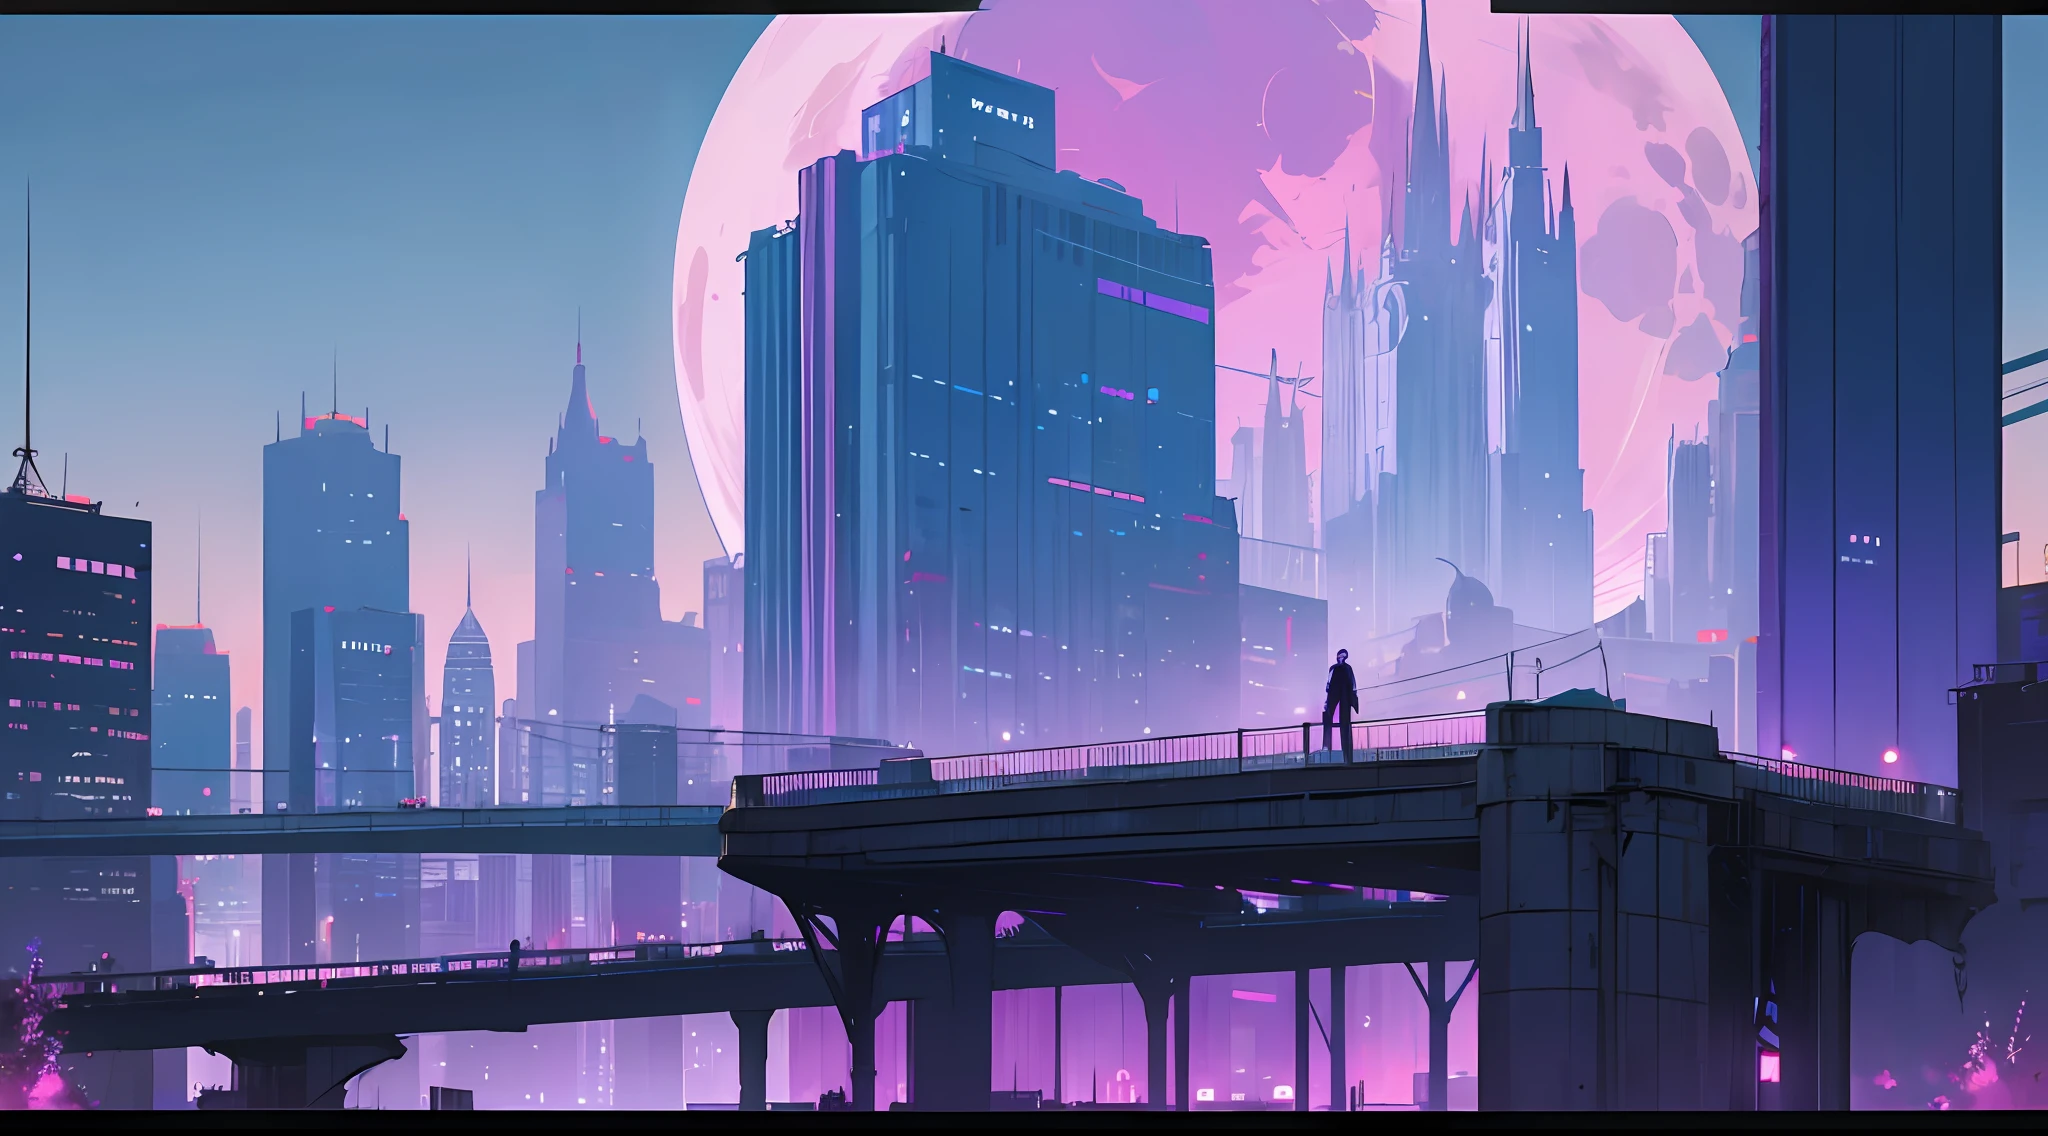 サイバーパンク, 市, 未来の都市, 未来主義, 青と紫の色合い, 素敵な, 詳細な建物, 非常に高くて雄大な高層ビル, 夜間, 美しさ, 美しさ, ビルボード, 大きな月, 雰囲気は憂慮すべきものです, 橋の上には若い男のシルエットがあります